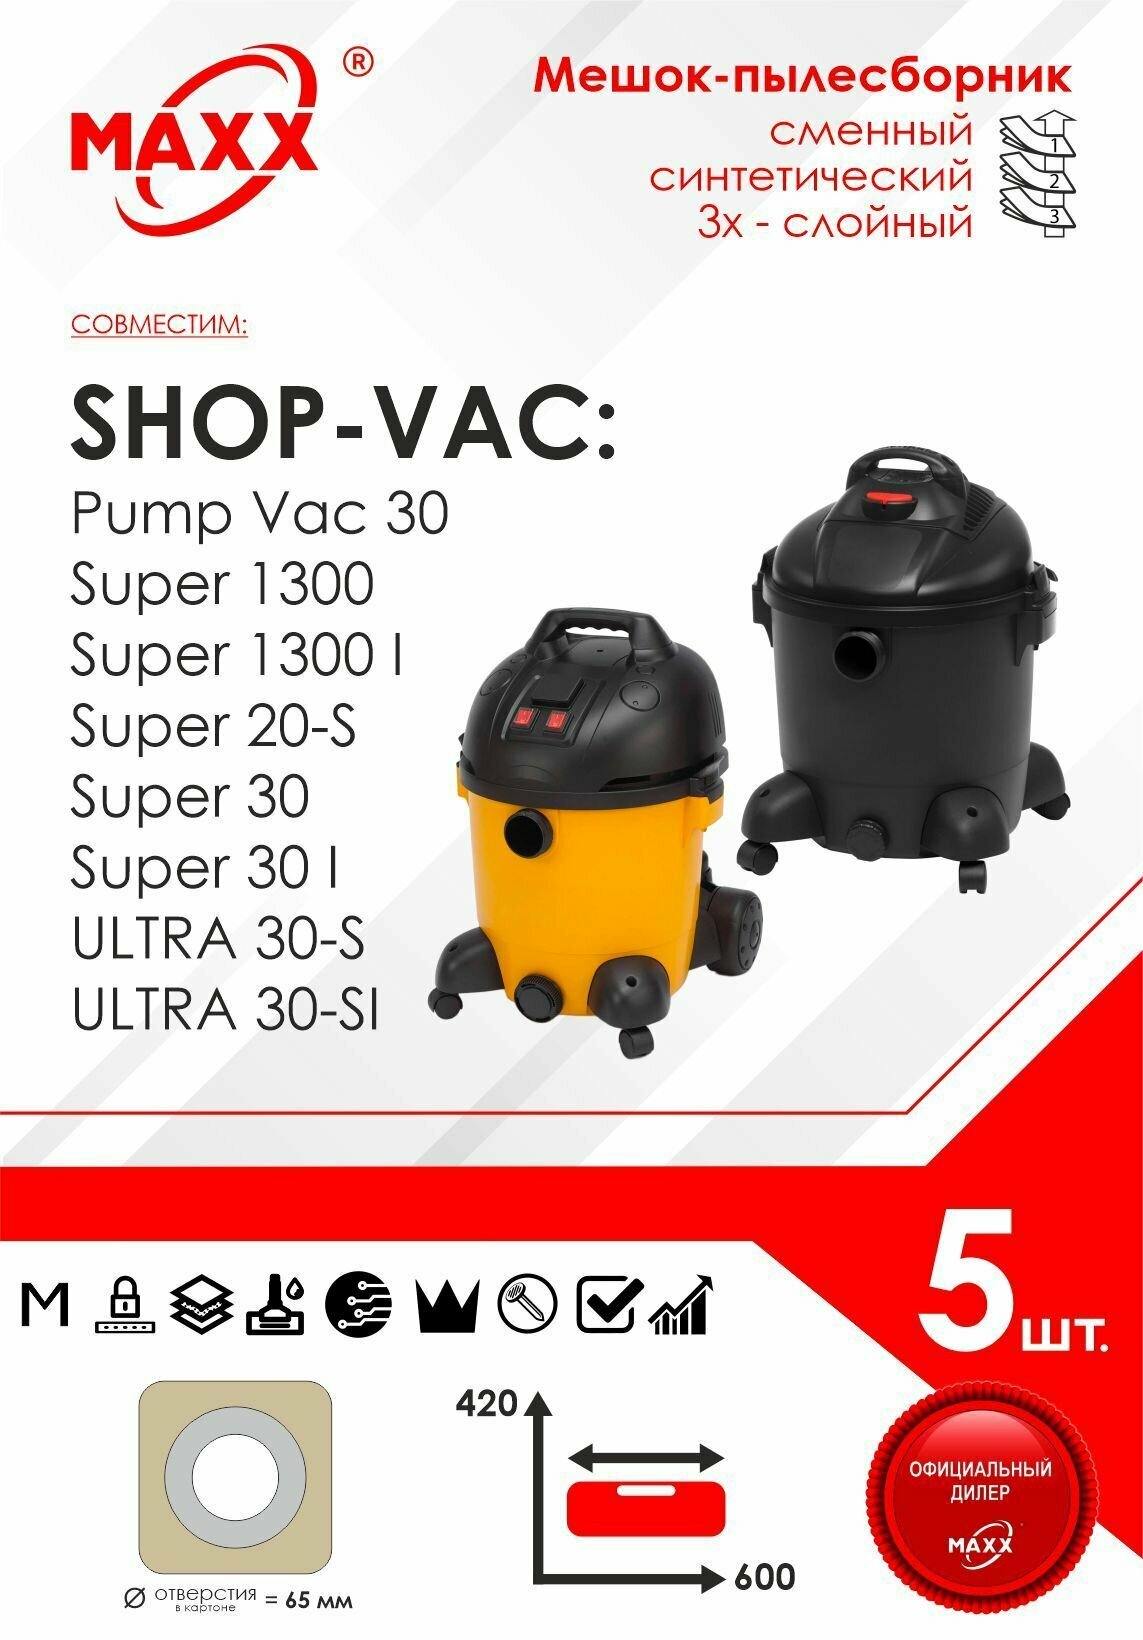 Мешок - пылесборник 5 шт. для пылесоса Shop-Vac Pump Vac 30, Super 1300, 20-S, 30, Ultra 30